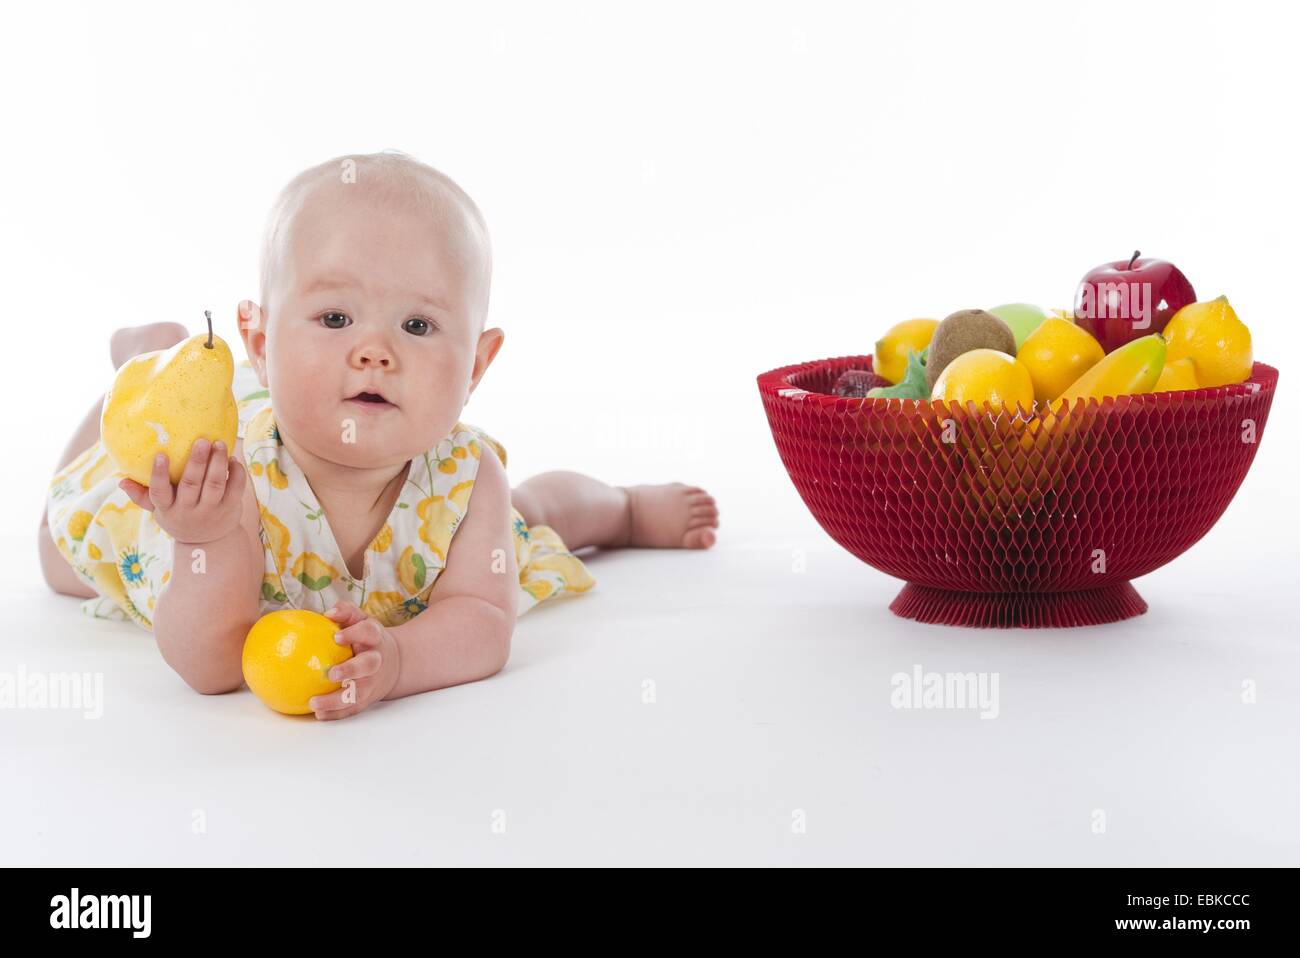 Bebe De 10 Mois Avec Le Panier De Fruits Et Des Fruits Dans Ses Mains Photo Stock Alamy